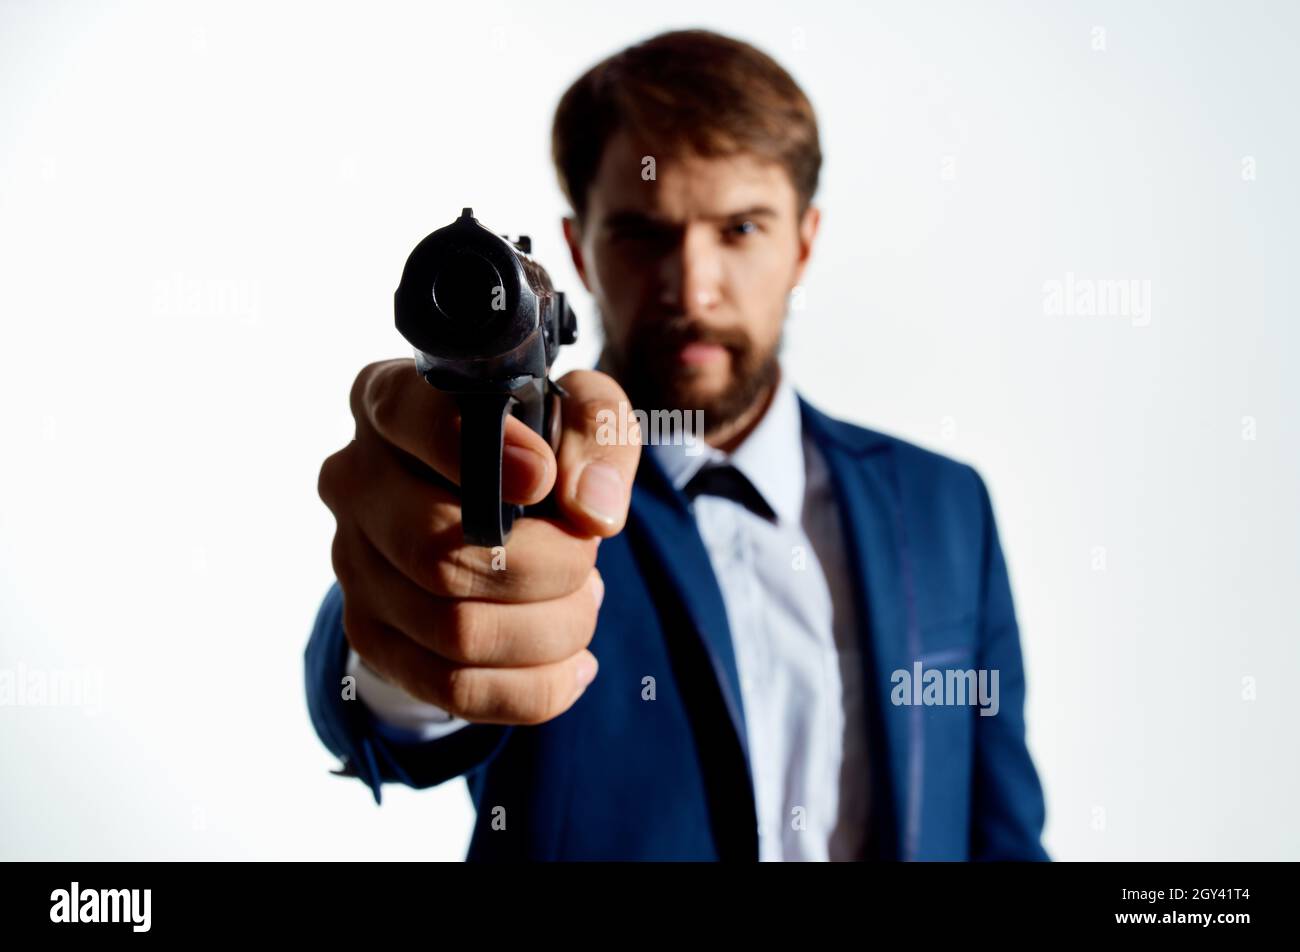 Детектив с пистолетом. Мужчина в костюме с пистолетом. Секретный агент фото с пистолетом.